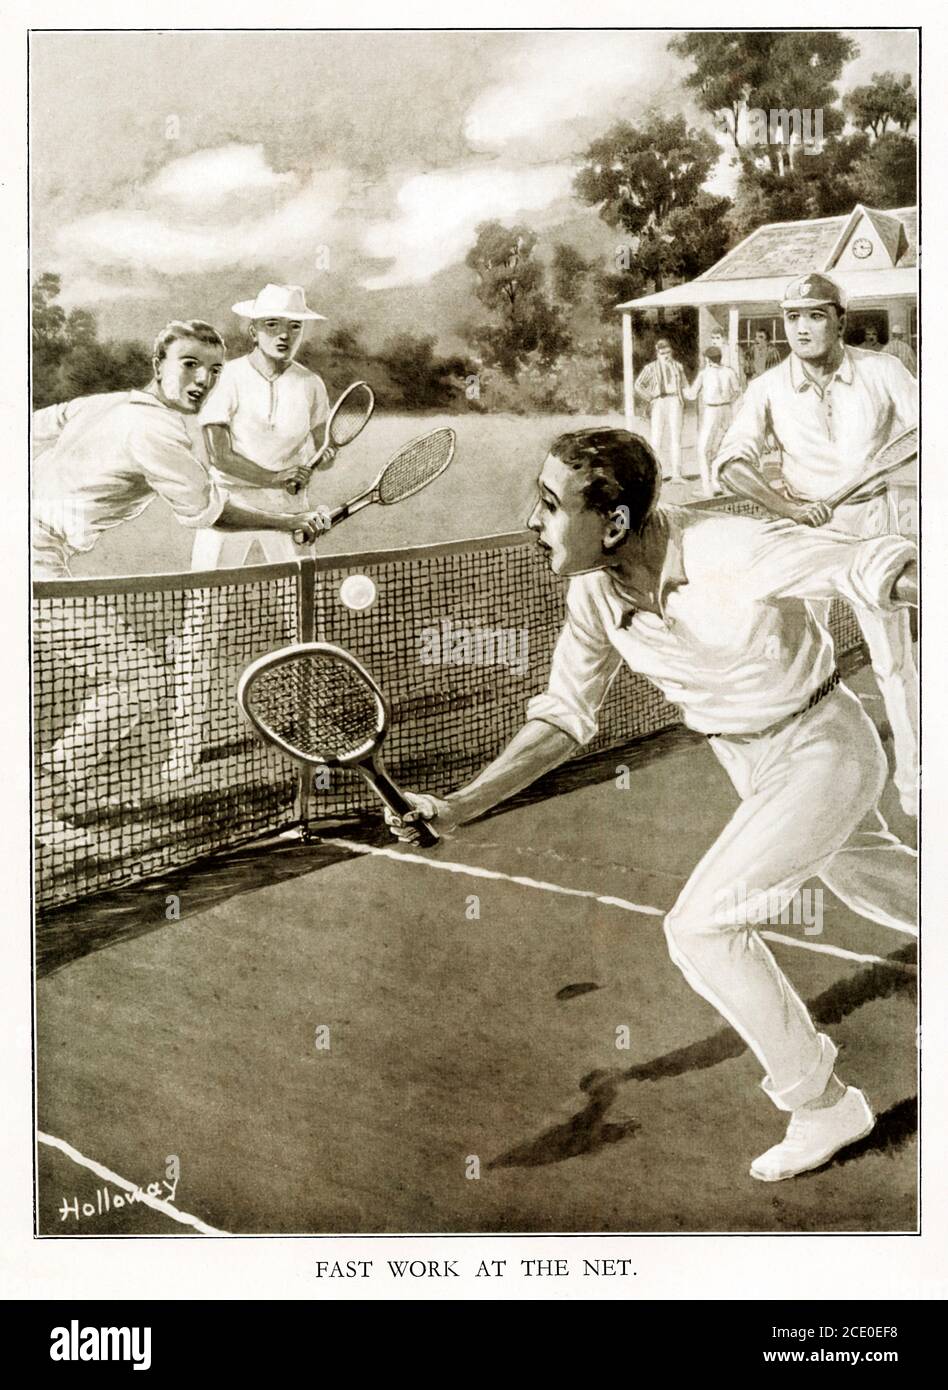 Trabajo rápido en la red, 1920 ilustración de la acción del partido de tenis con una volley tomada inteligentemente en los cuartos cerrados en un partido apretado de dobles Foto de stock